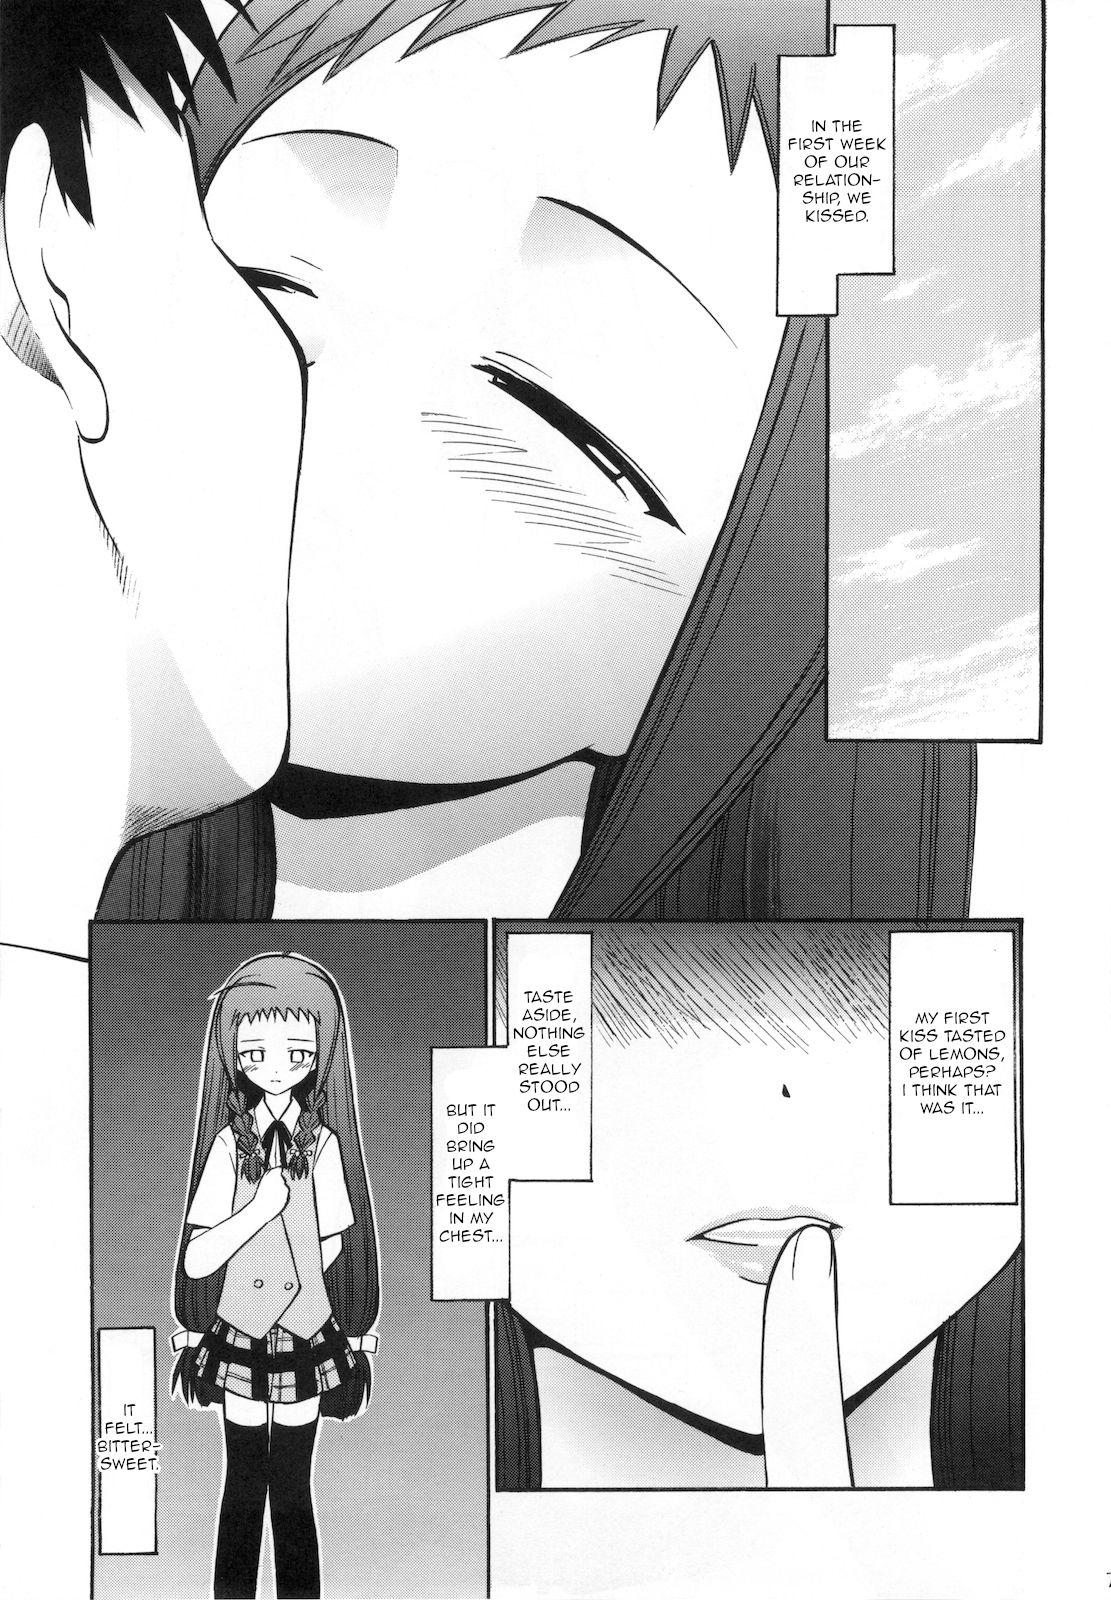 Spreading Yue no Koisuru Heart - Mahou sensei negima Teenies - Page 6